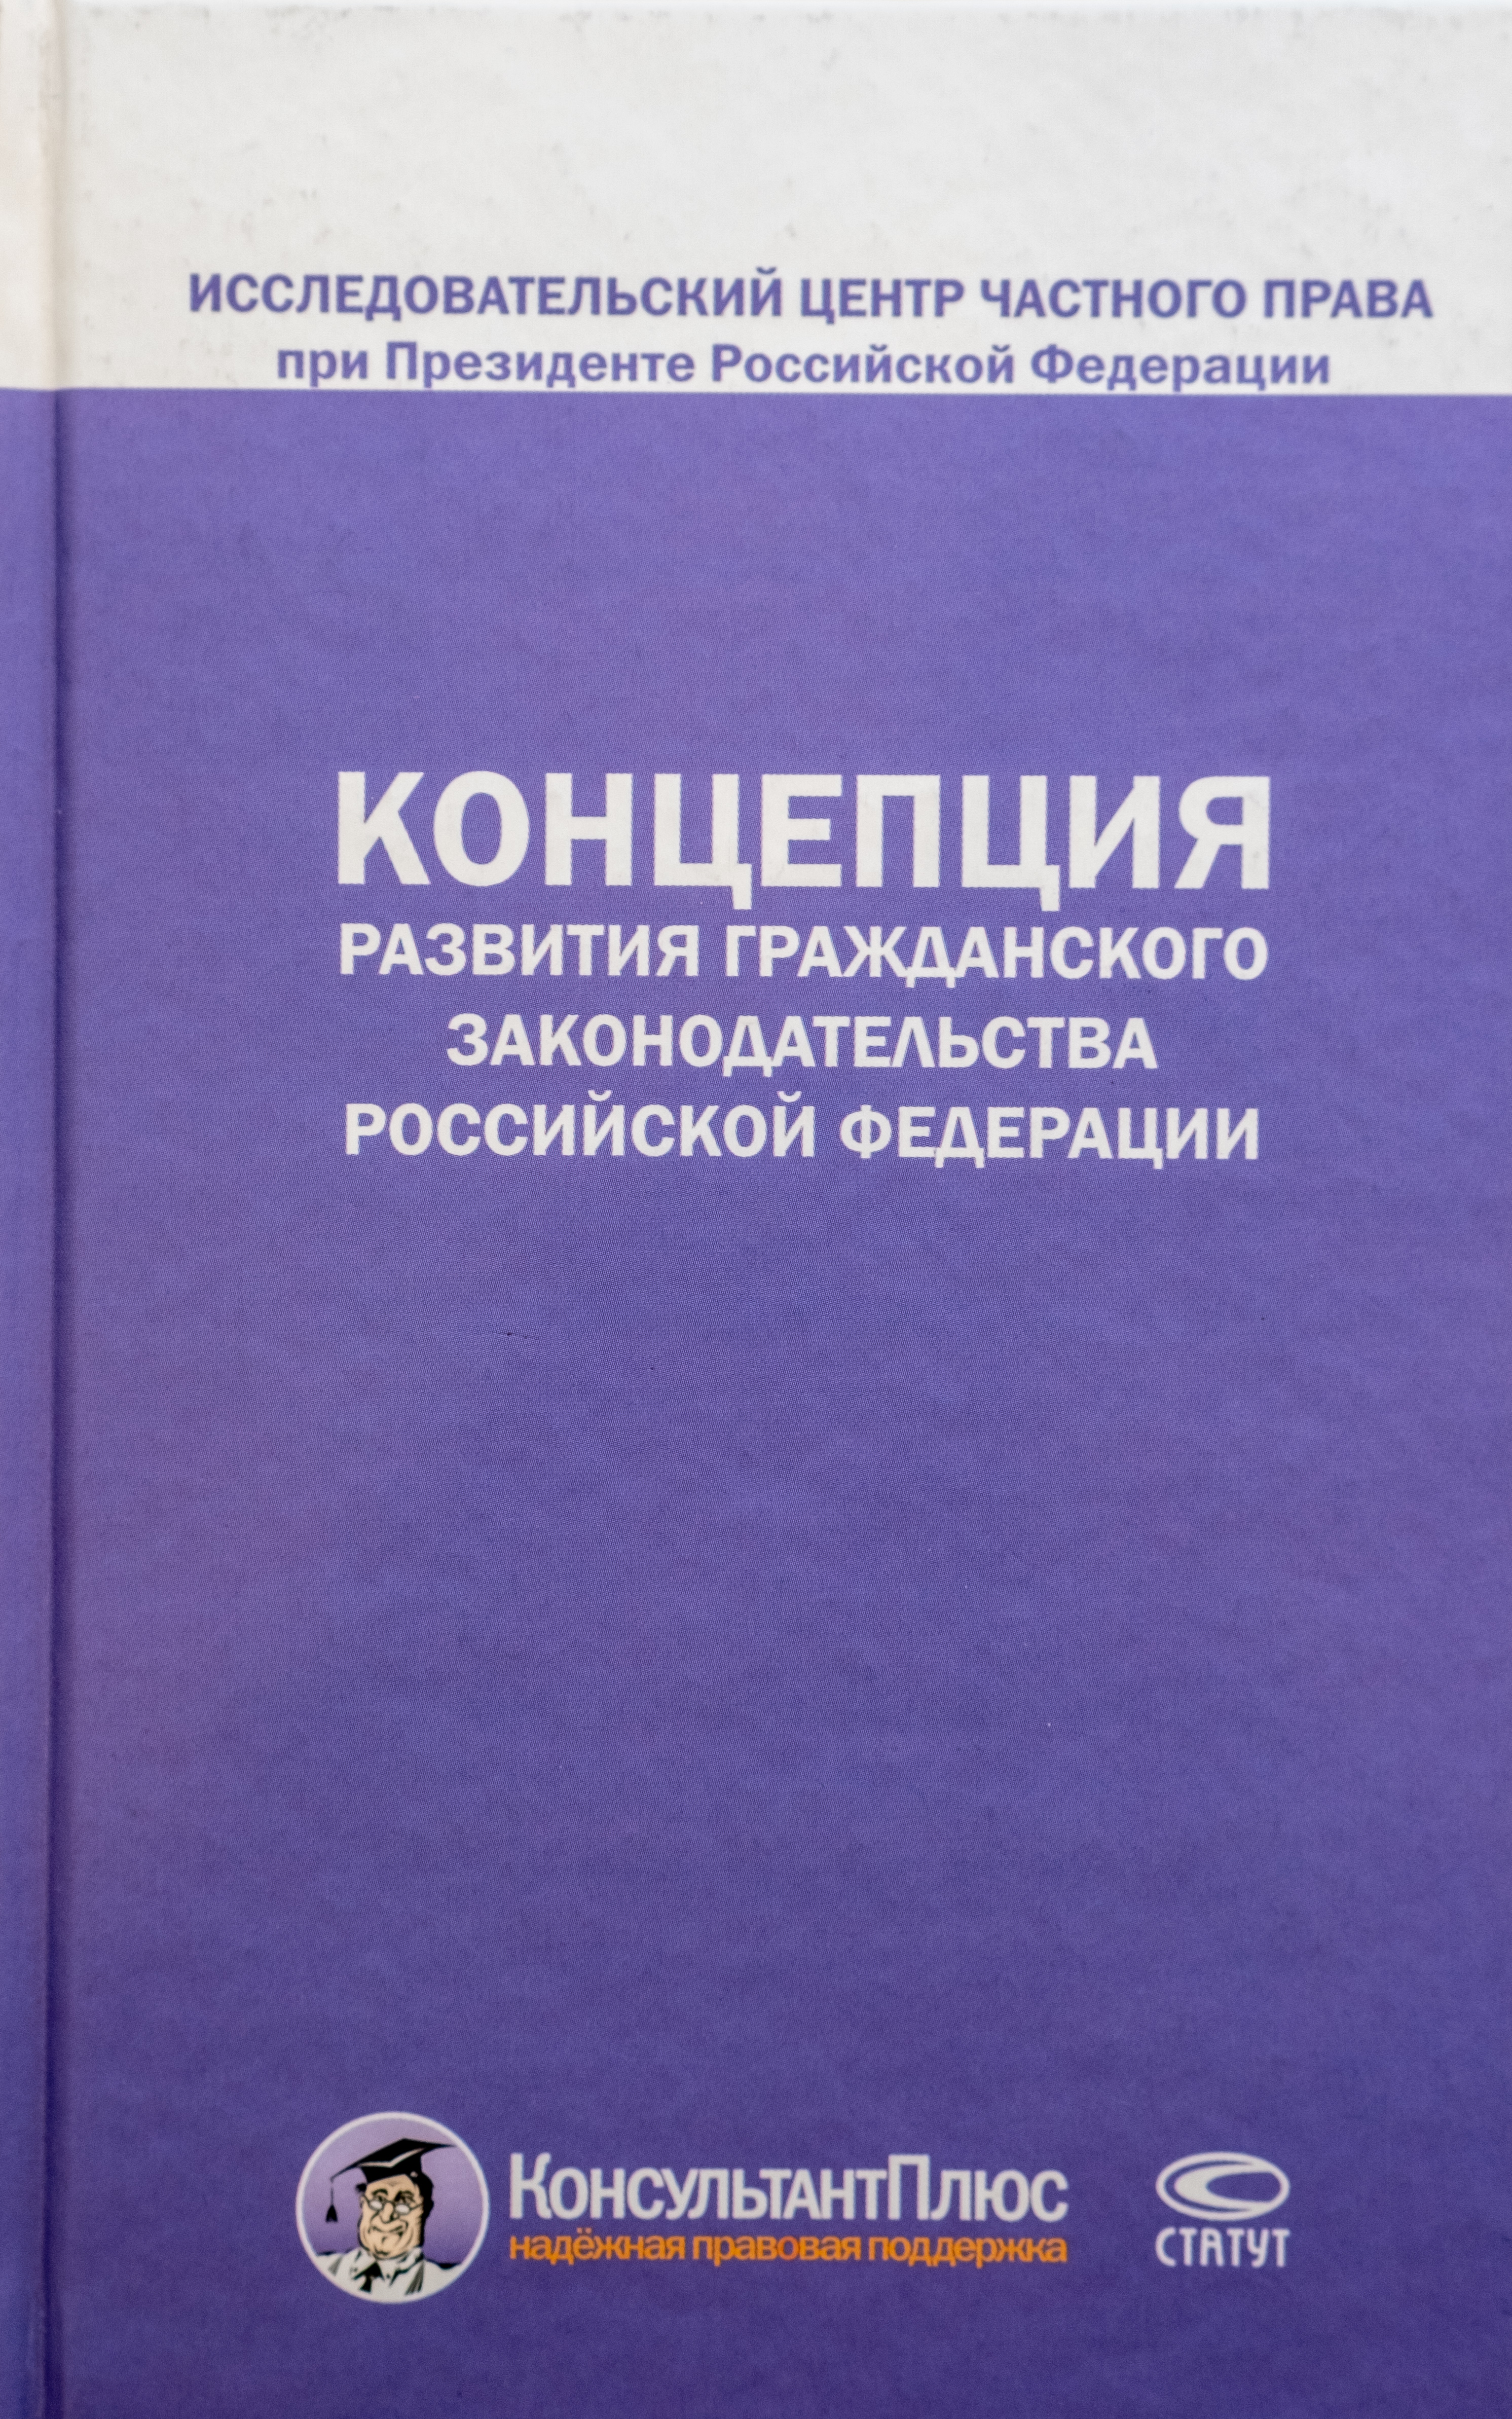 Концепция развития Гражданского законодательства Российской Федерации